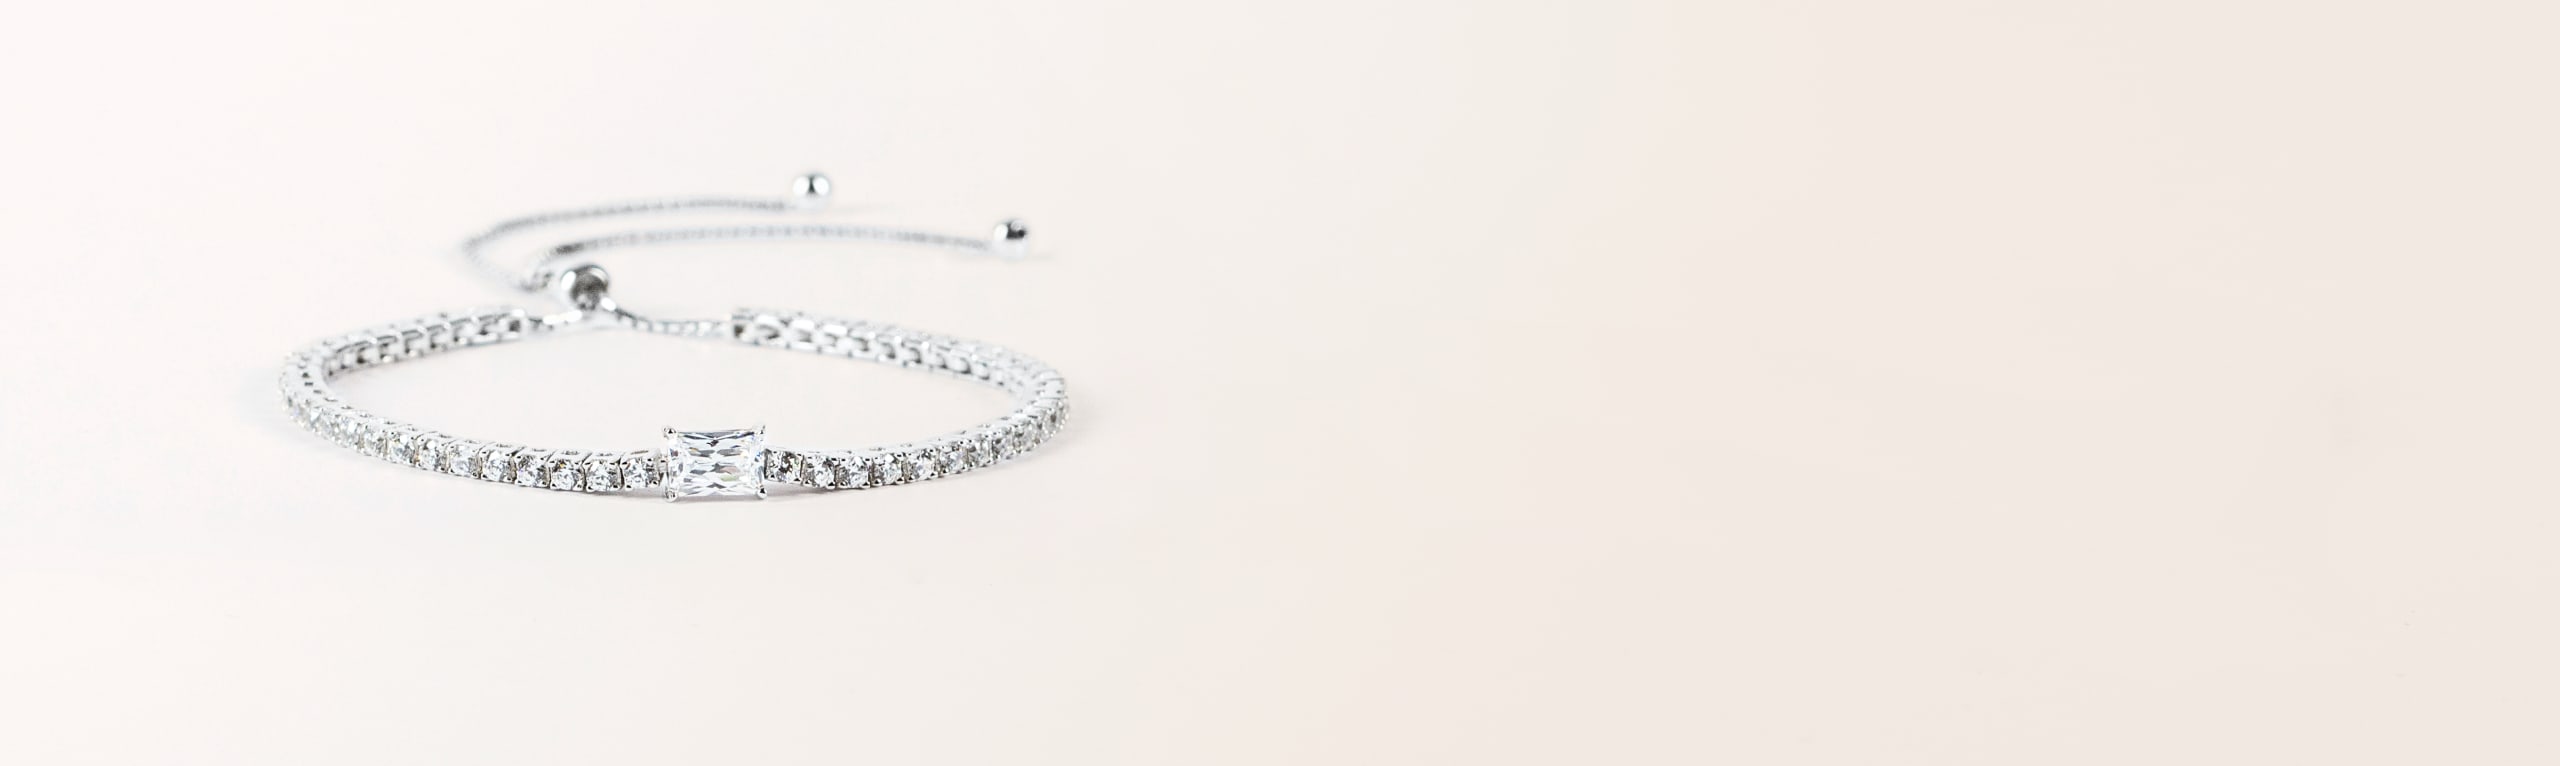 Diamond alternative bracelet gift for $500 or under